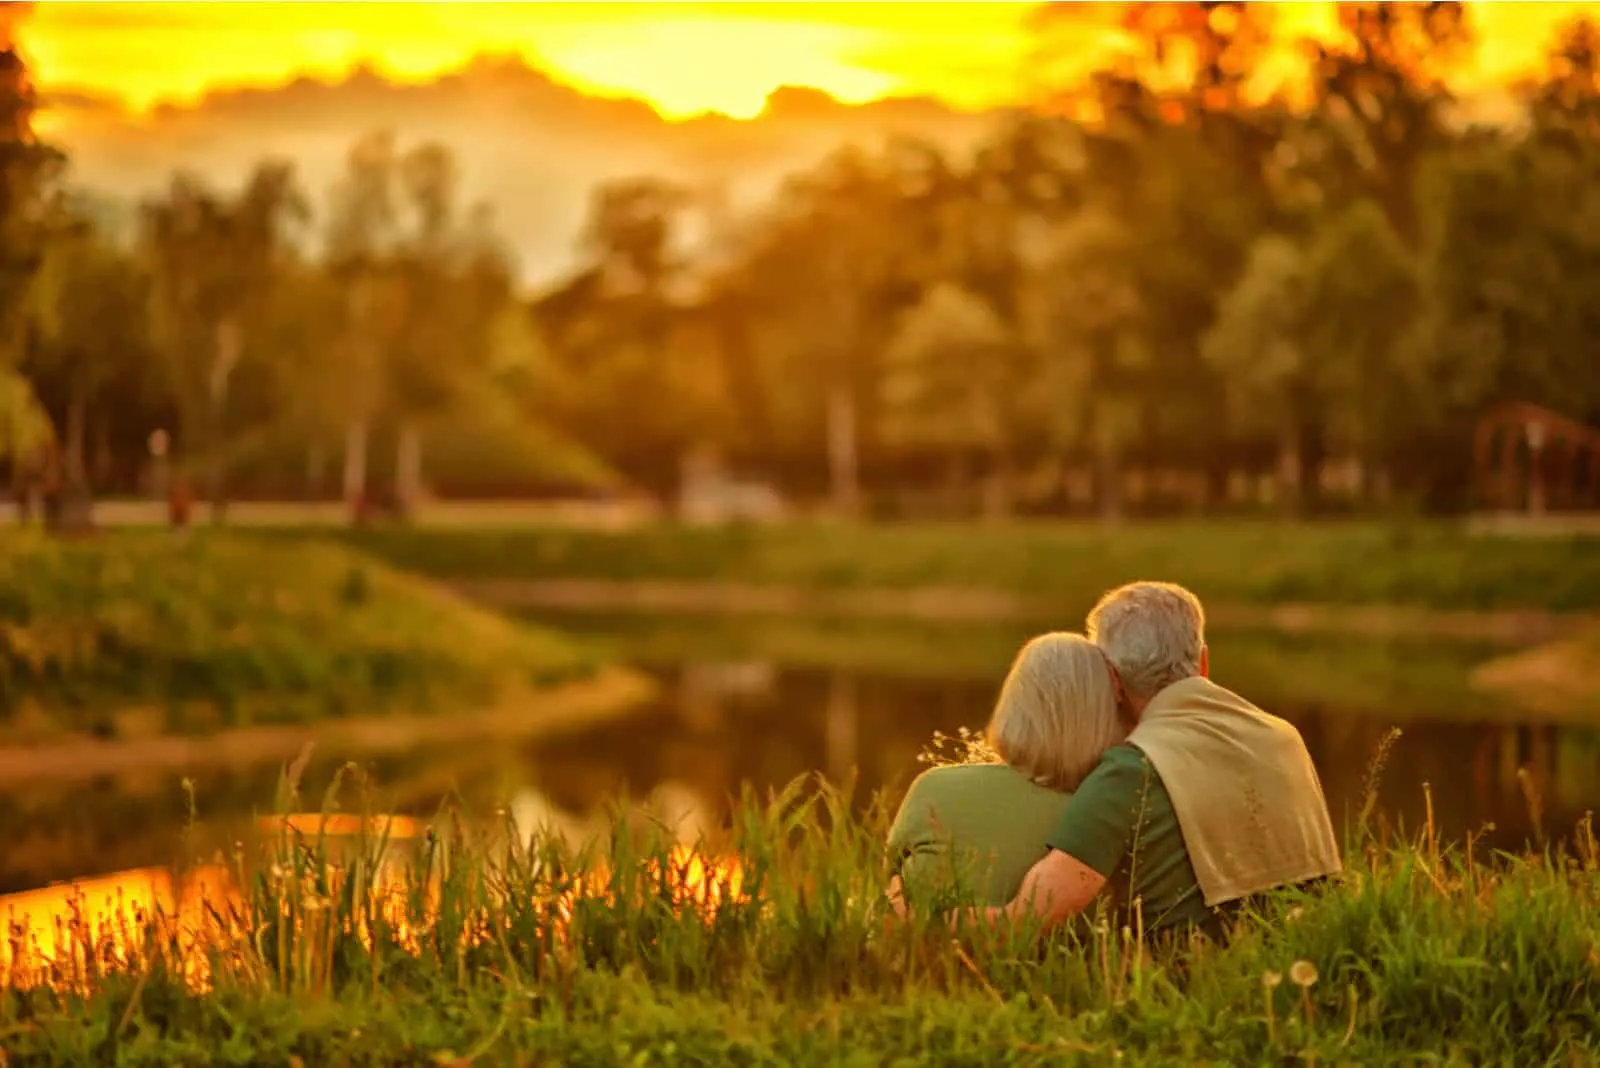 Bei Sonnenuntergang am Ufer des Sees umarmt sich ein älteres Ehepaar